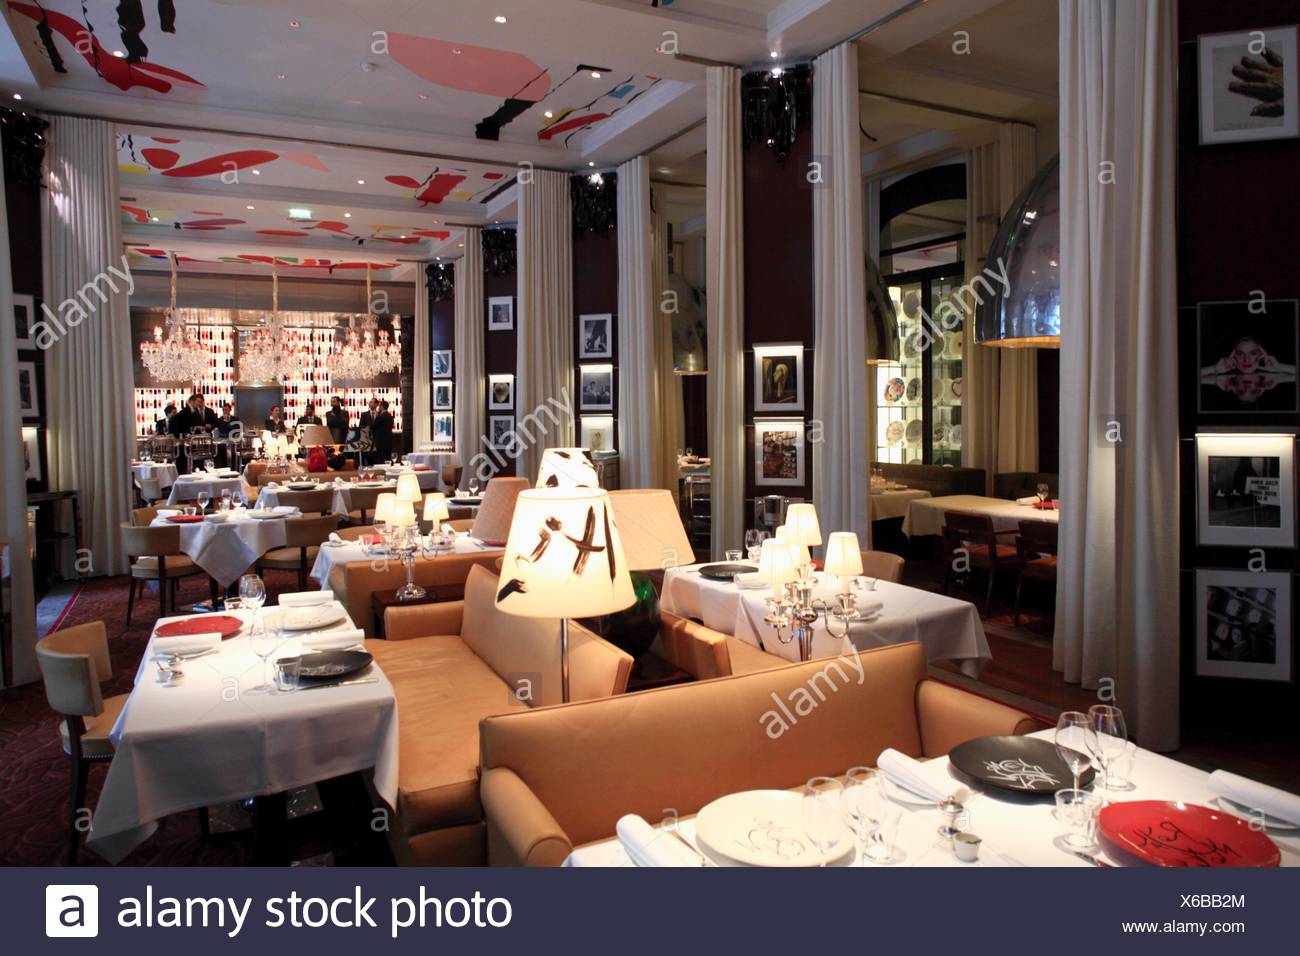 The Restaurant La Cuisine Designed By Philippe Starck In Hotel Le Royal Monceau Raffles Paris Paris France Stock Photo Alamy